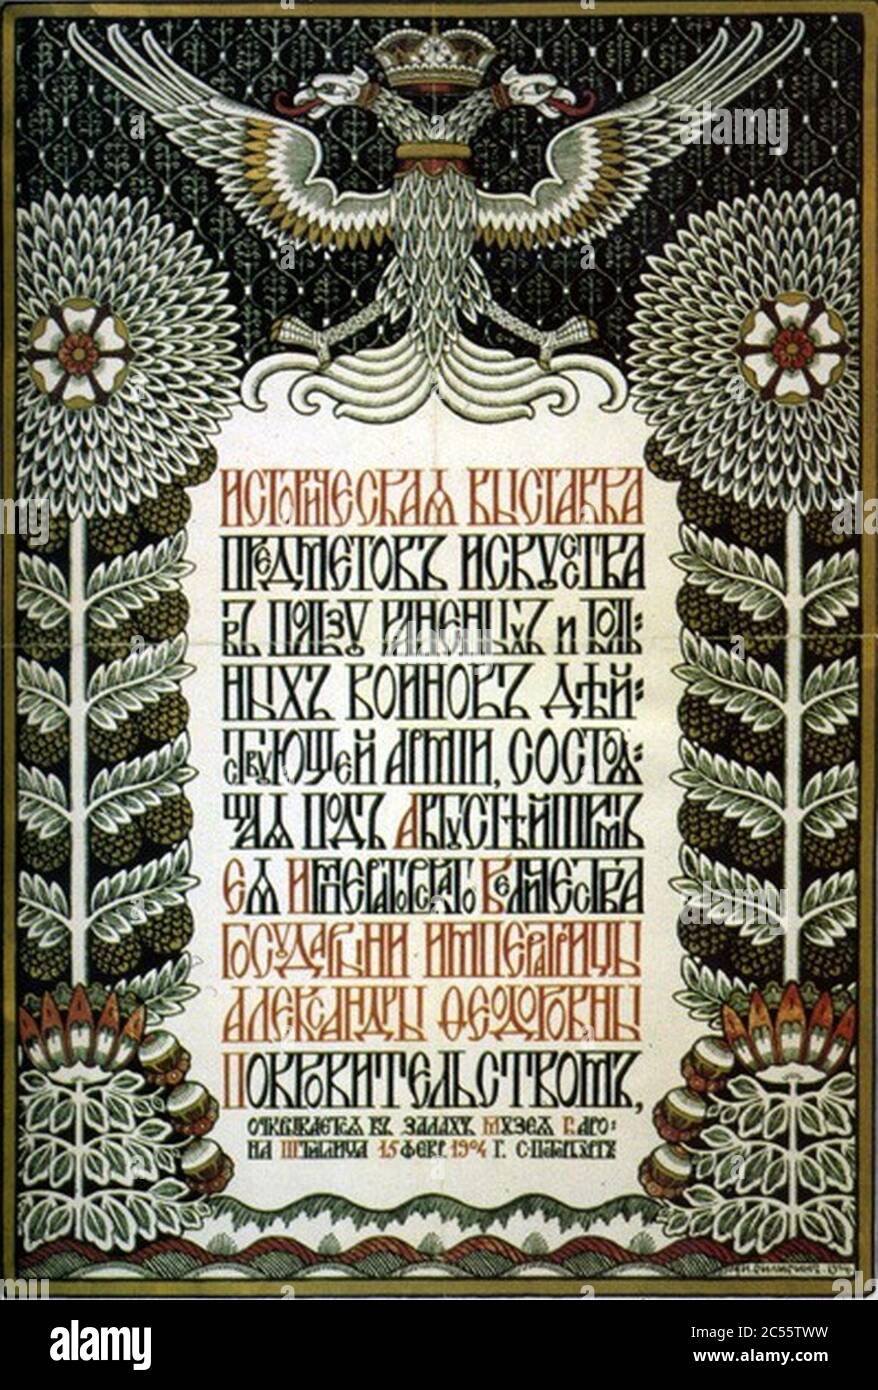 Ivan Bilibin - Plakat-historische-Ausstellung-von-Kunst-Objekte-zugunsten-von-Verletzten-1904. Stockfoto